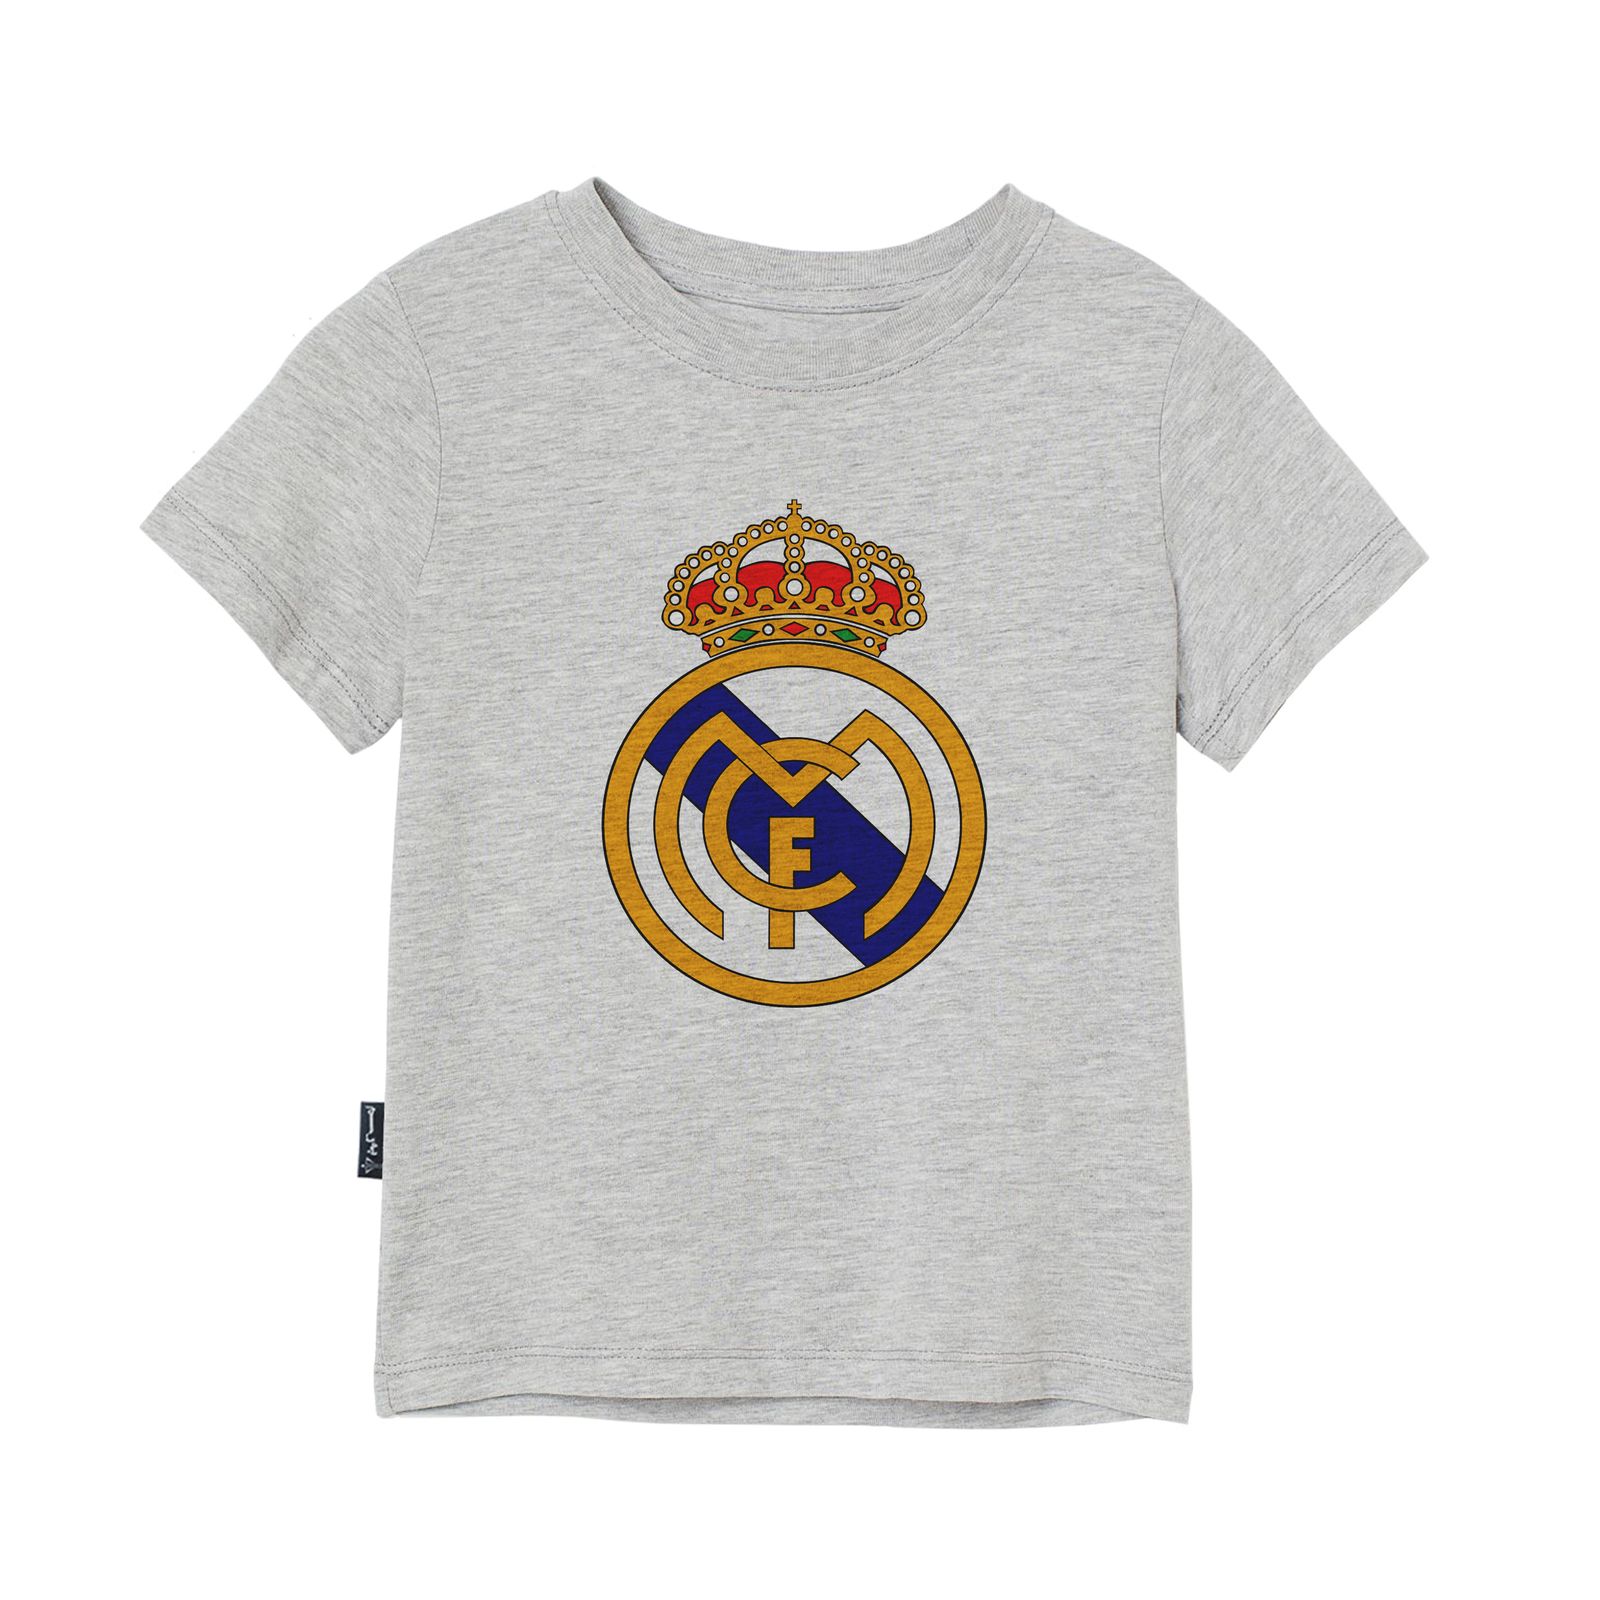 تی شرت آستین کوتاه دخترانه به رسم مدل رئال مادرید کد 110019 -  - 1